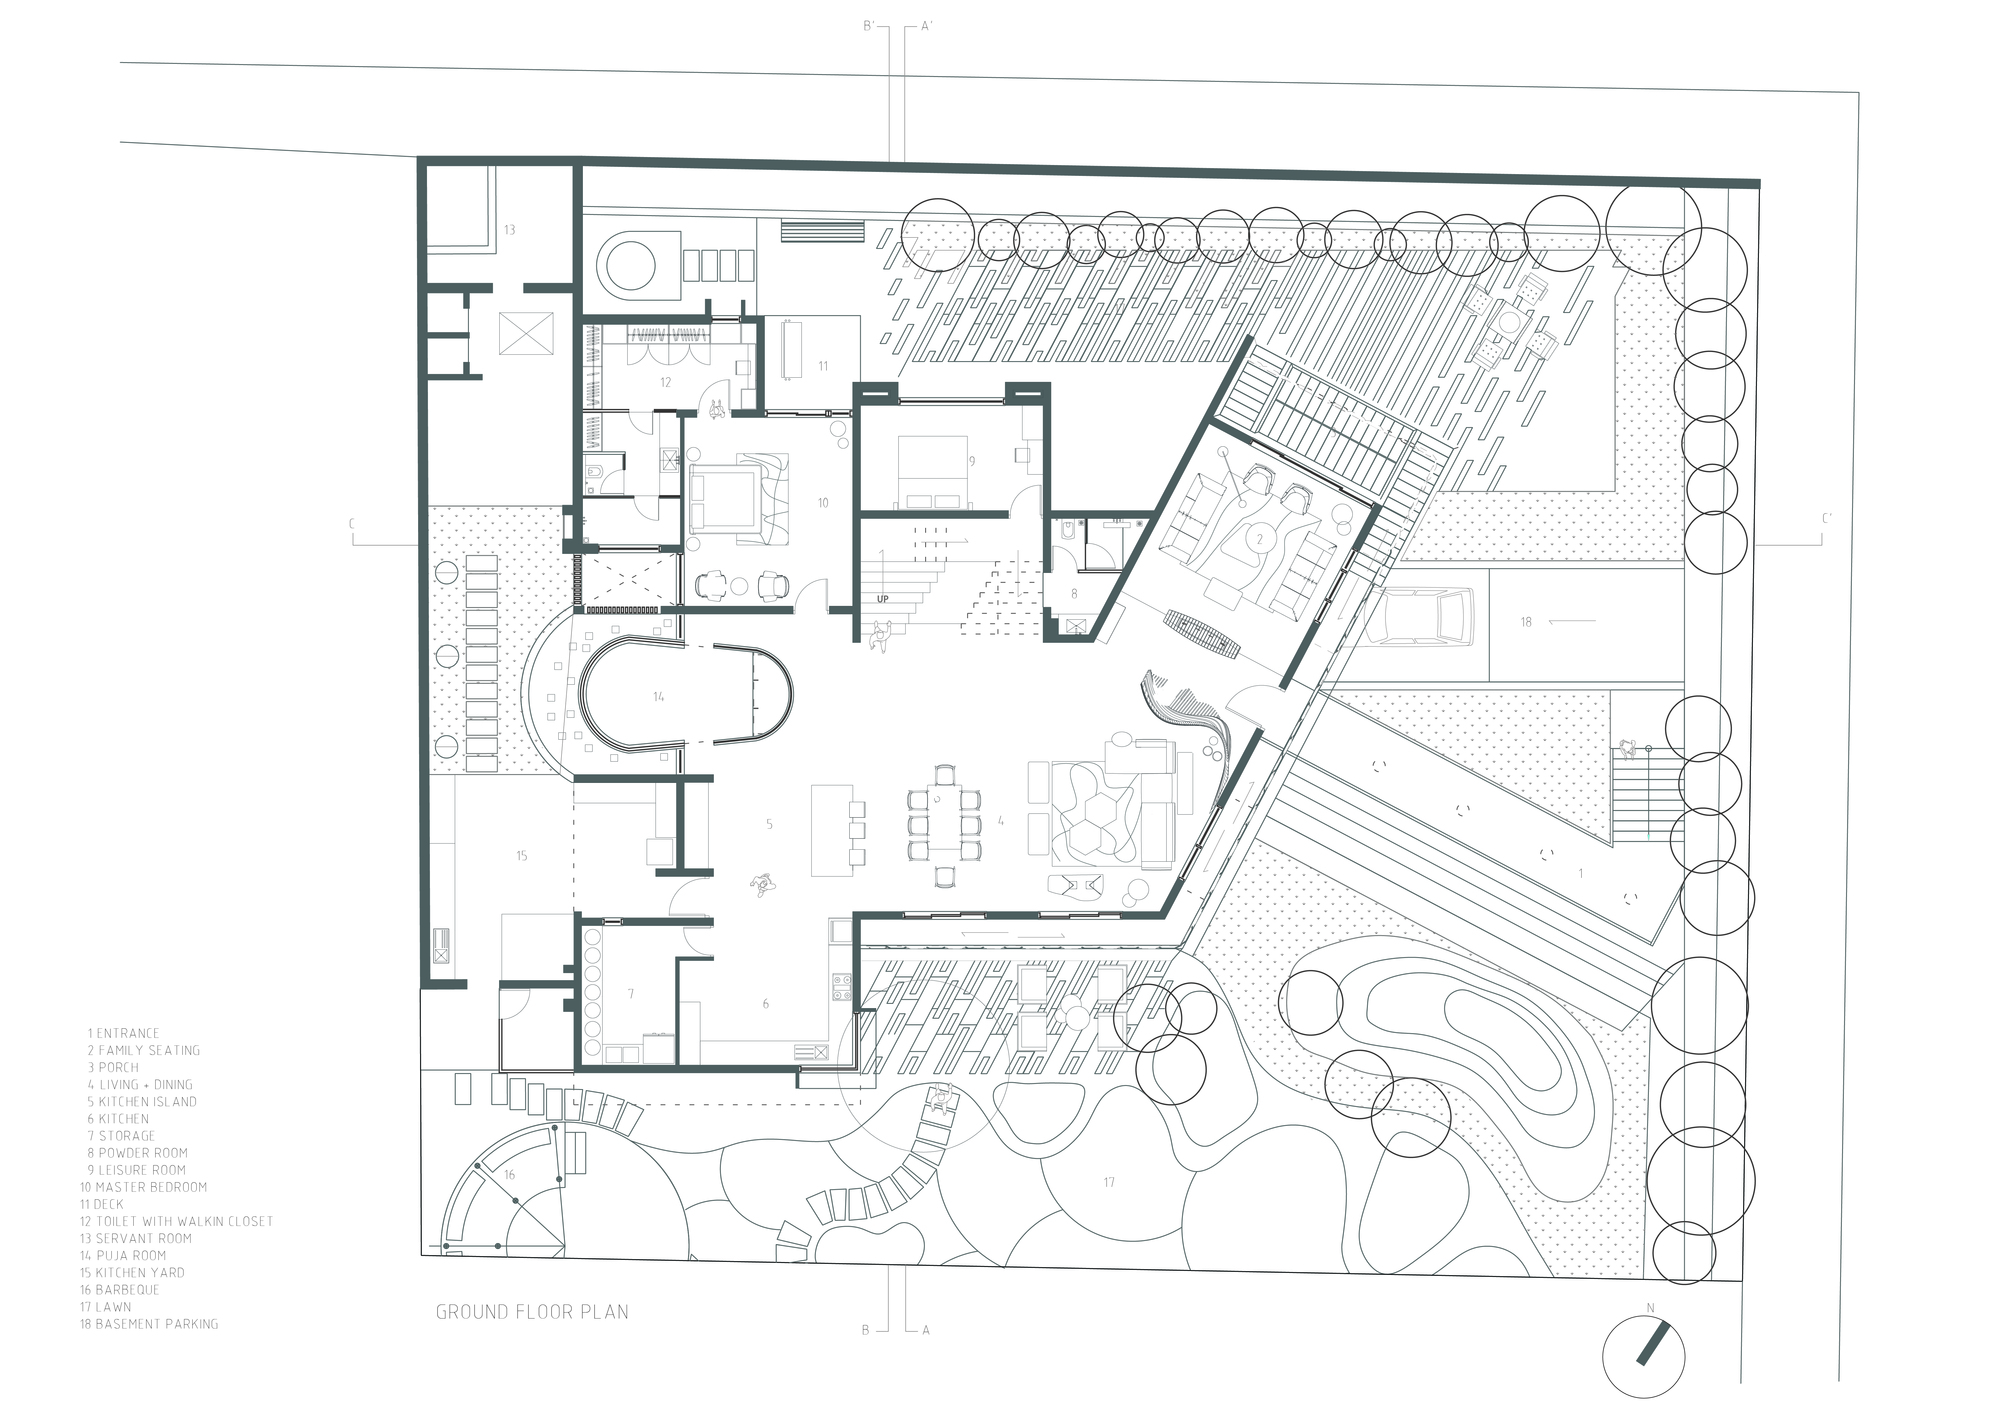 m2 ground floor plan .jpg